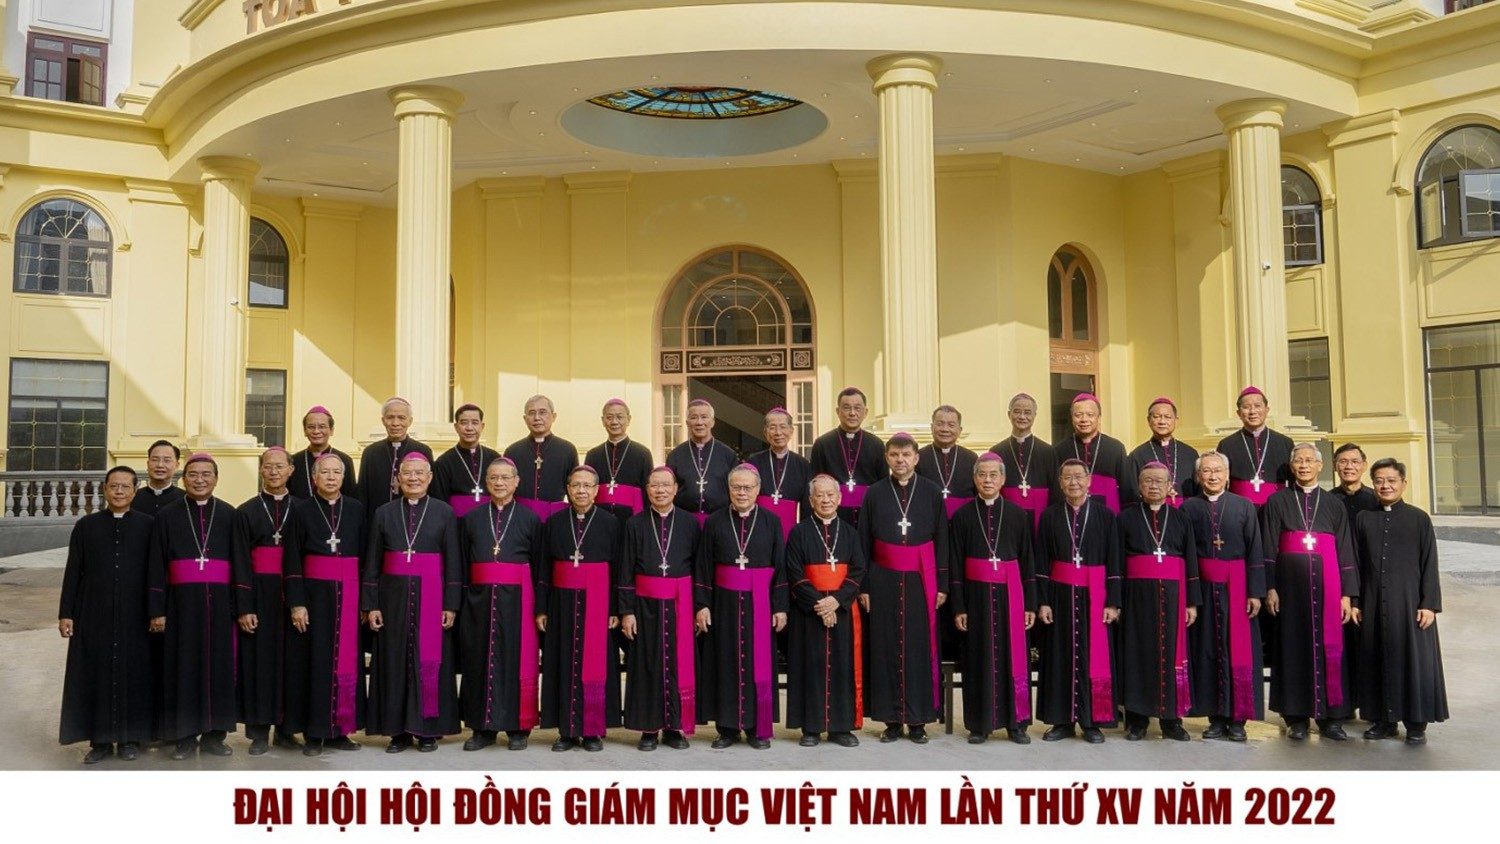 HĐGM Việt Nam: Ban Thường vụ mới và Thư Chung